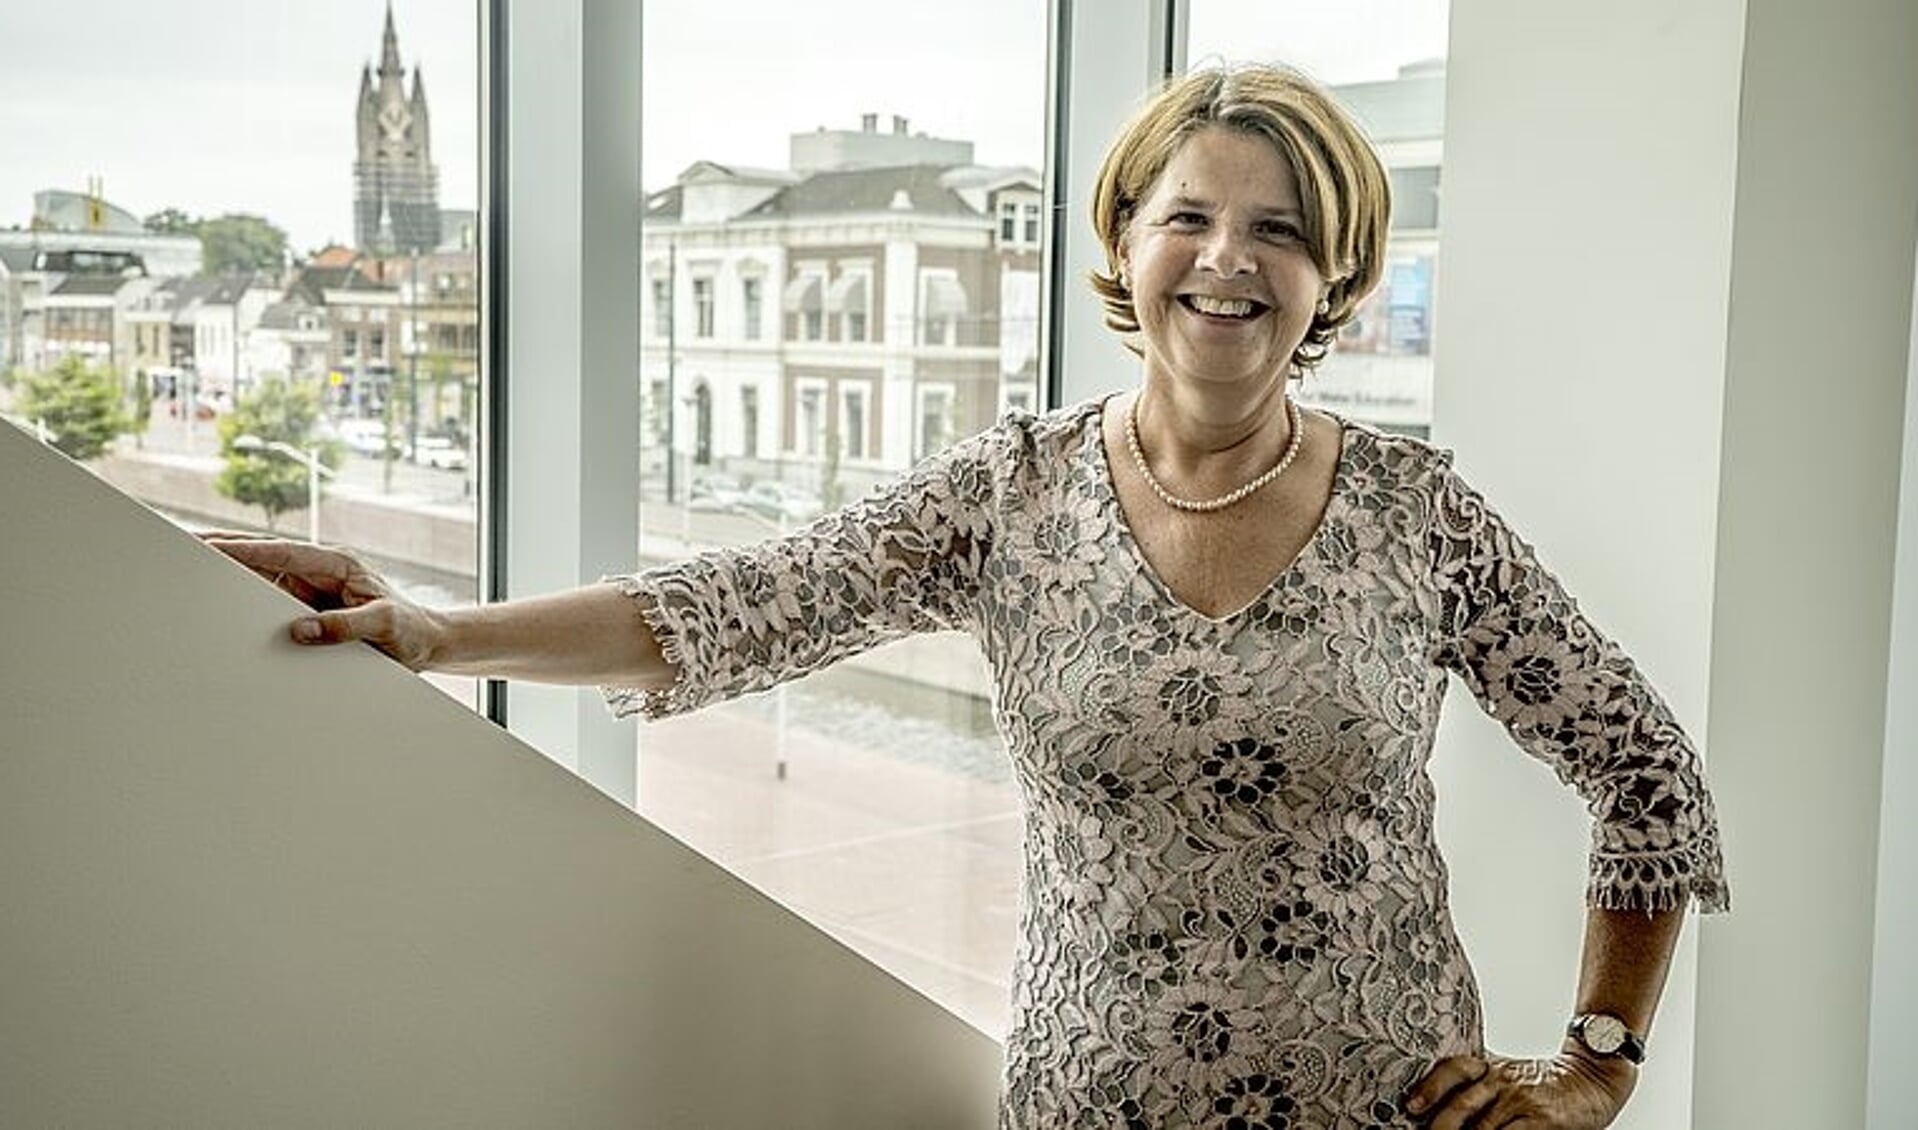 De best wel zeer bekende Delftenaar Marja van Bijsterveldt juicht de nieuwe opzet van de verkiezing toe